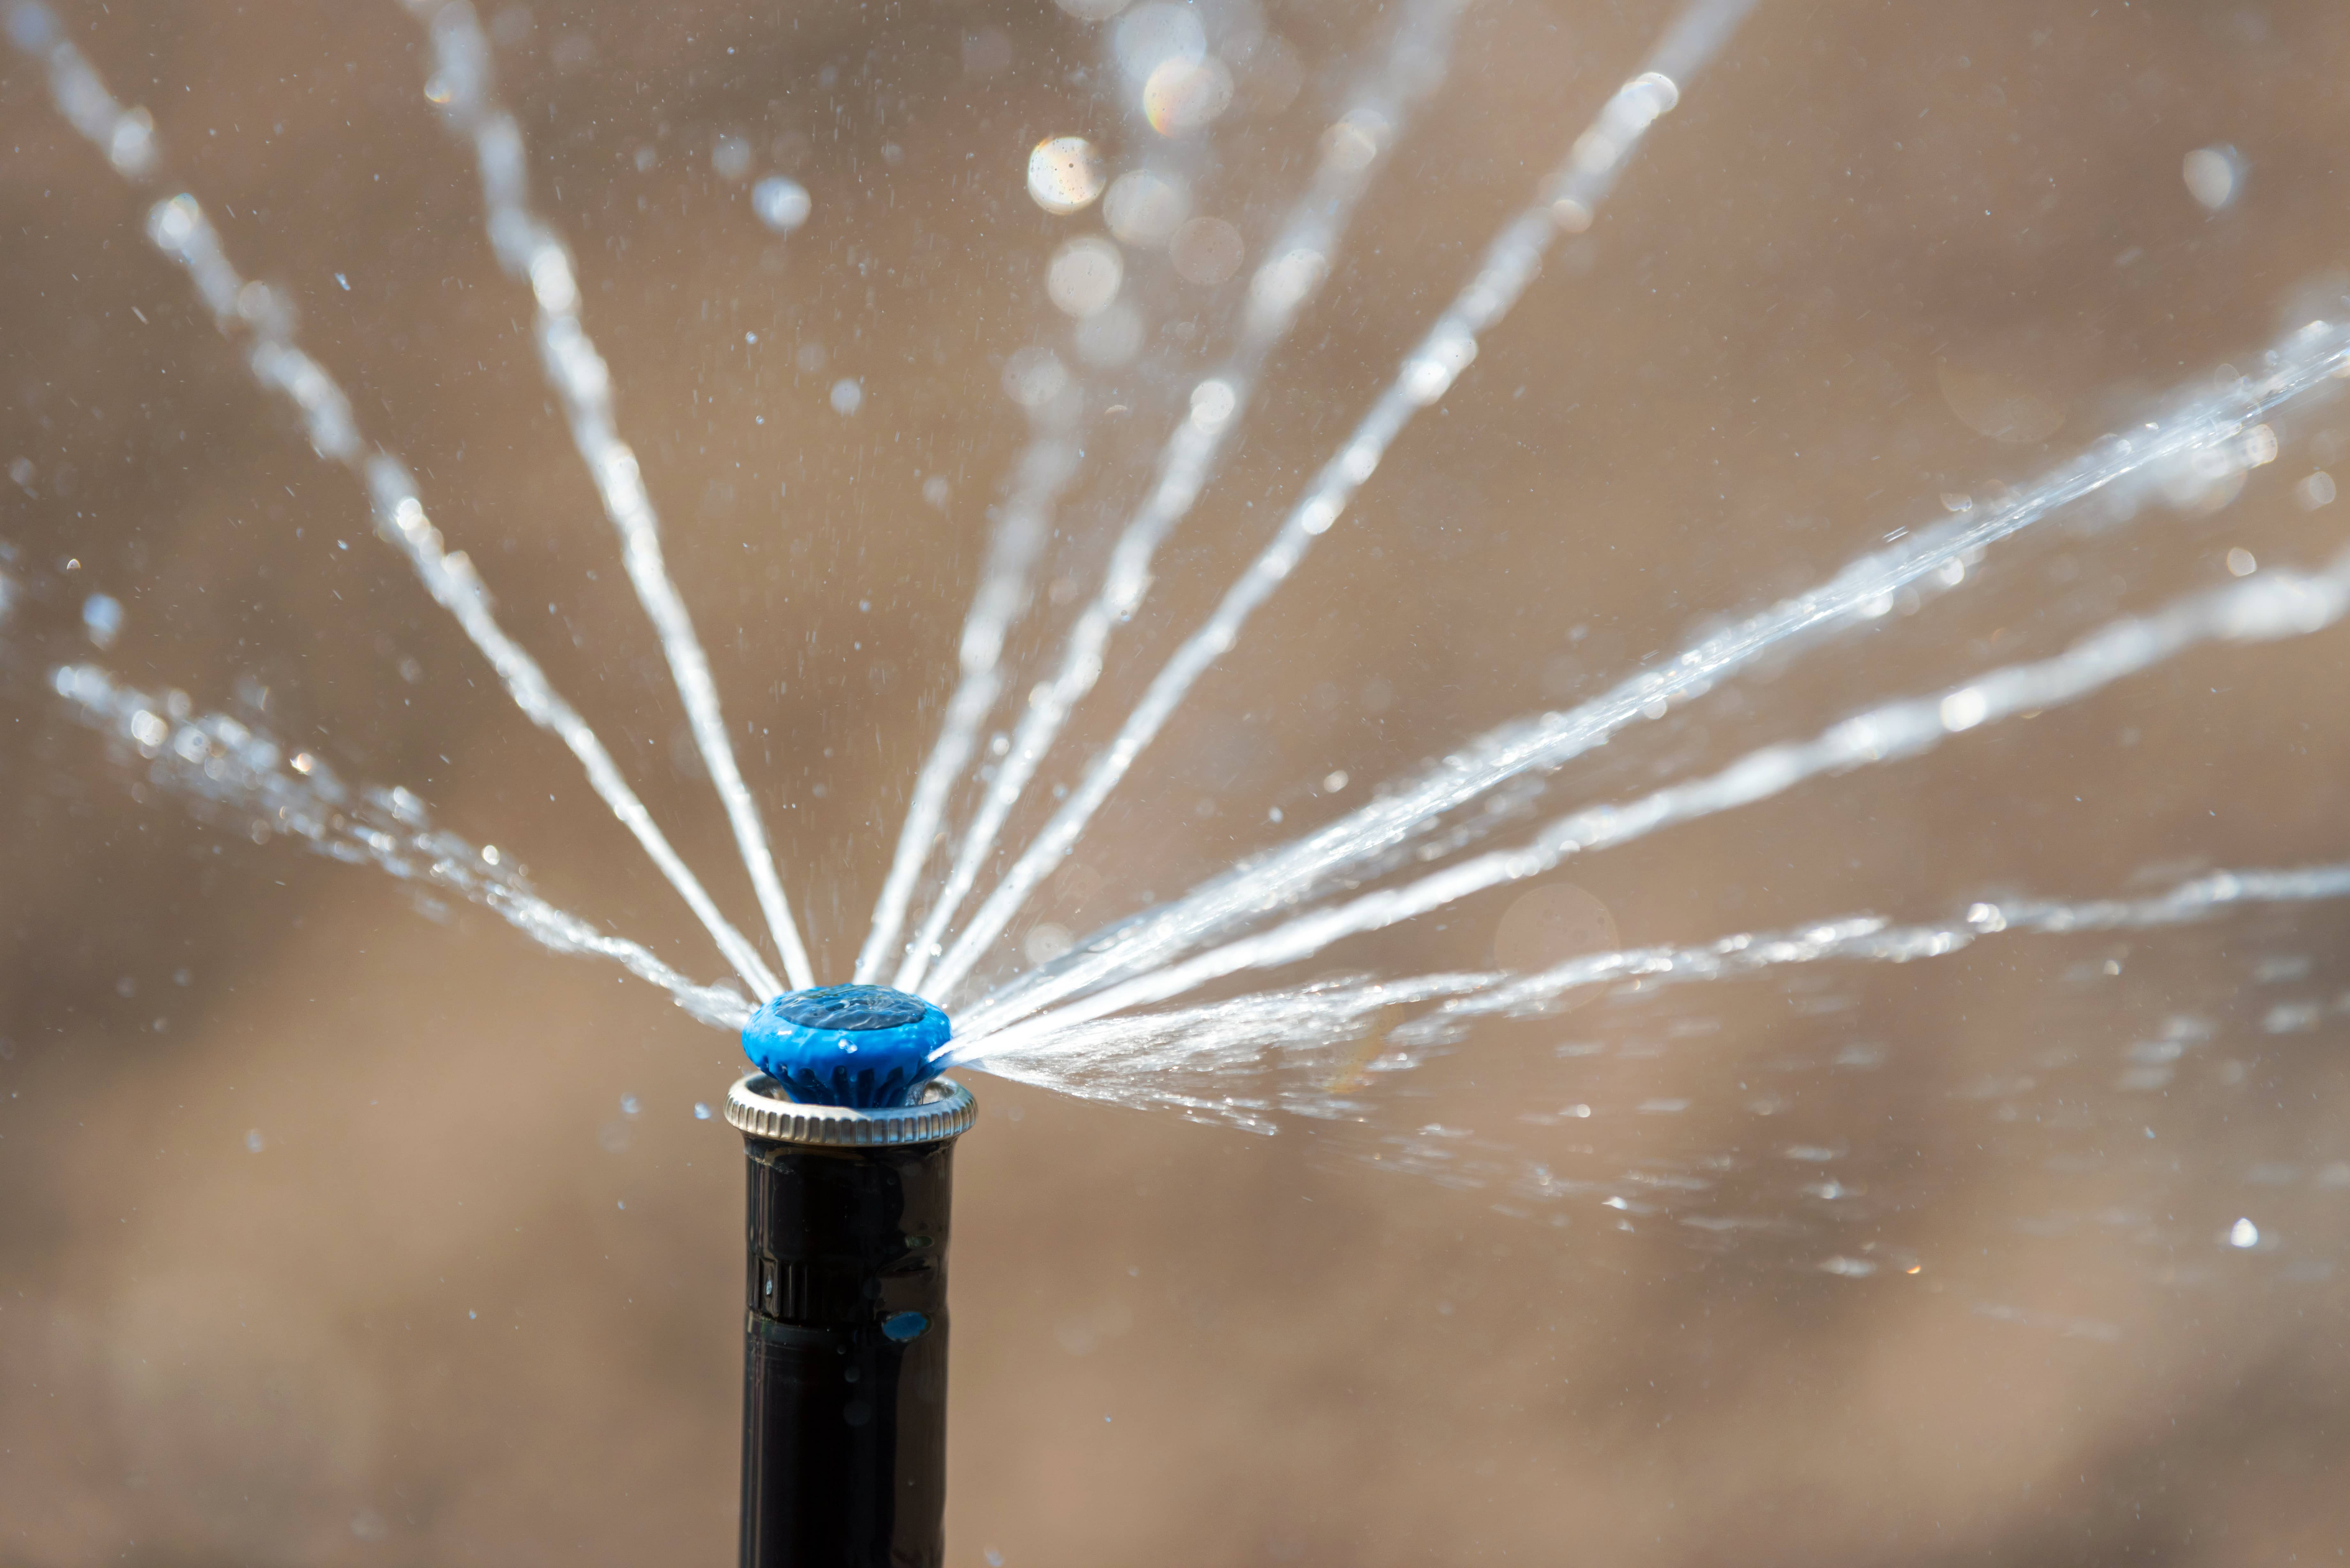 sprinkler-in-action-watering